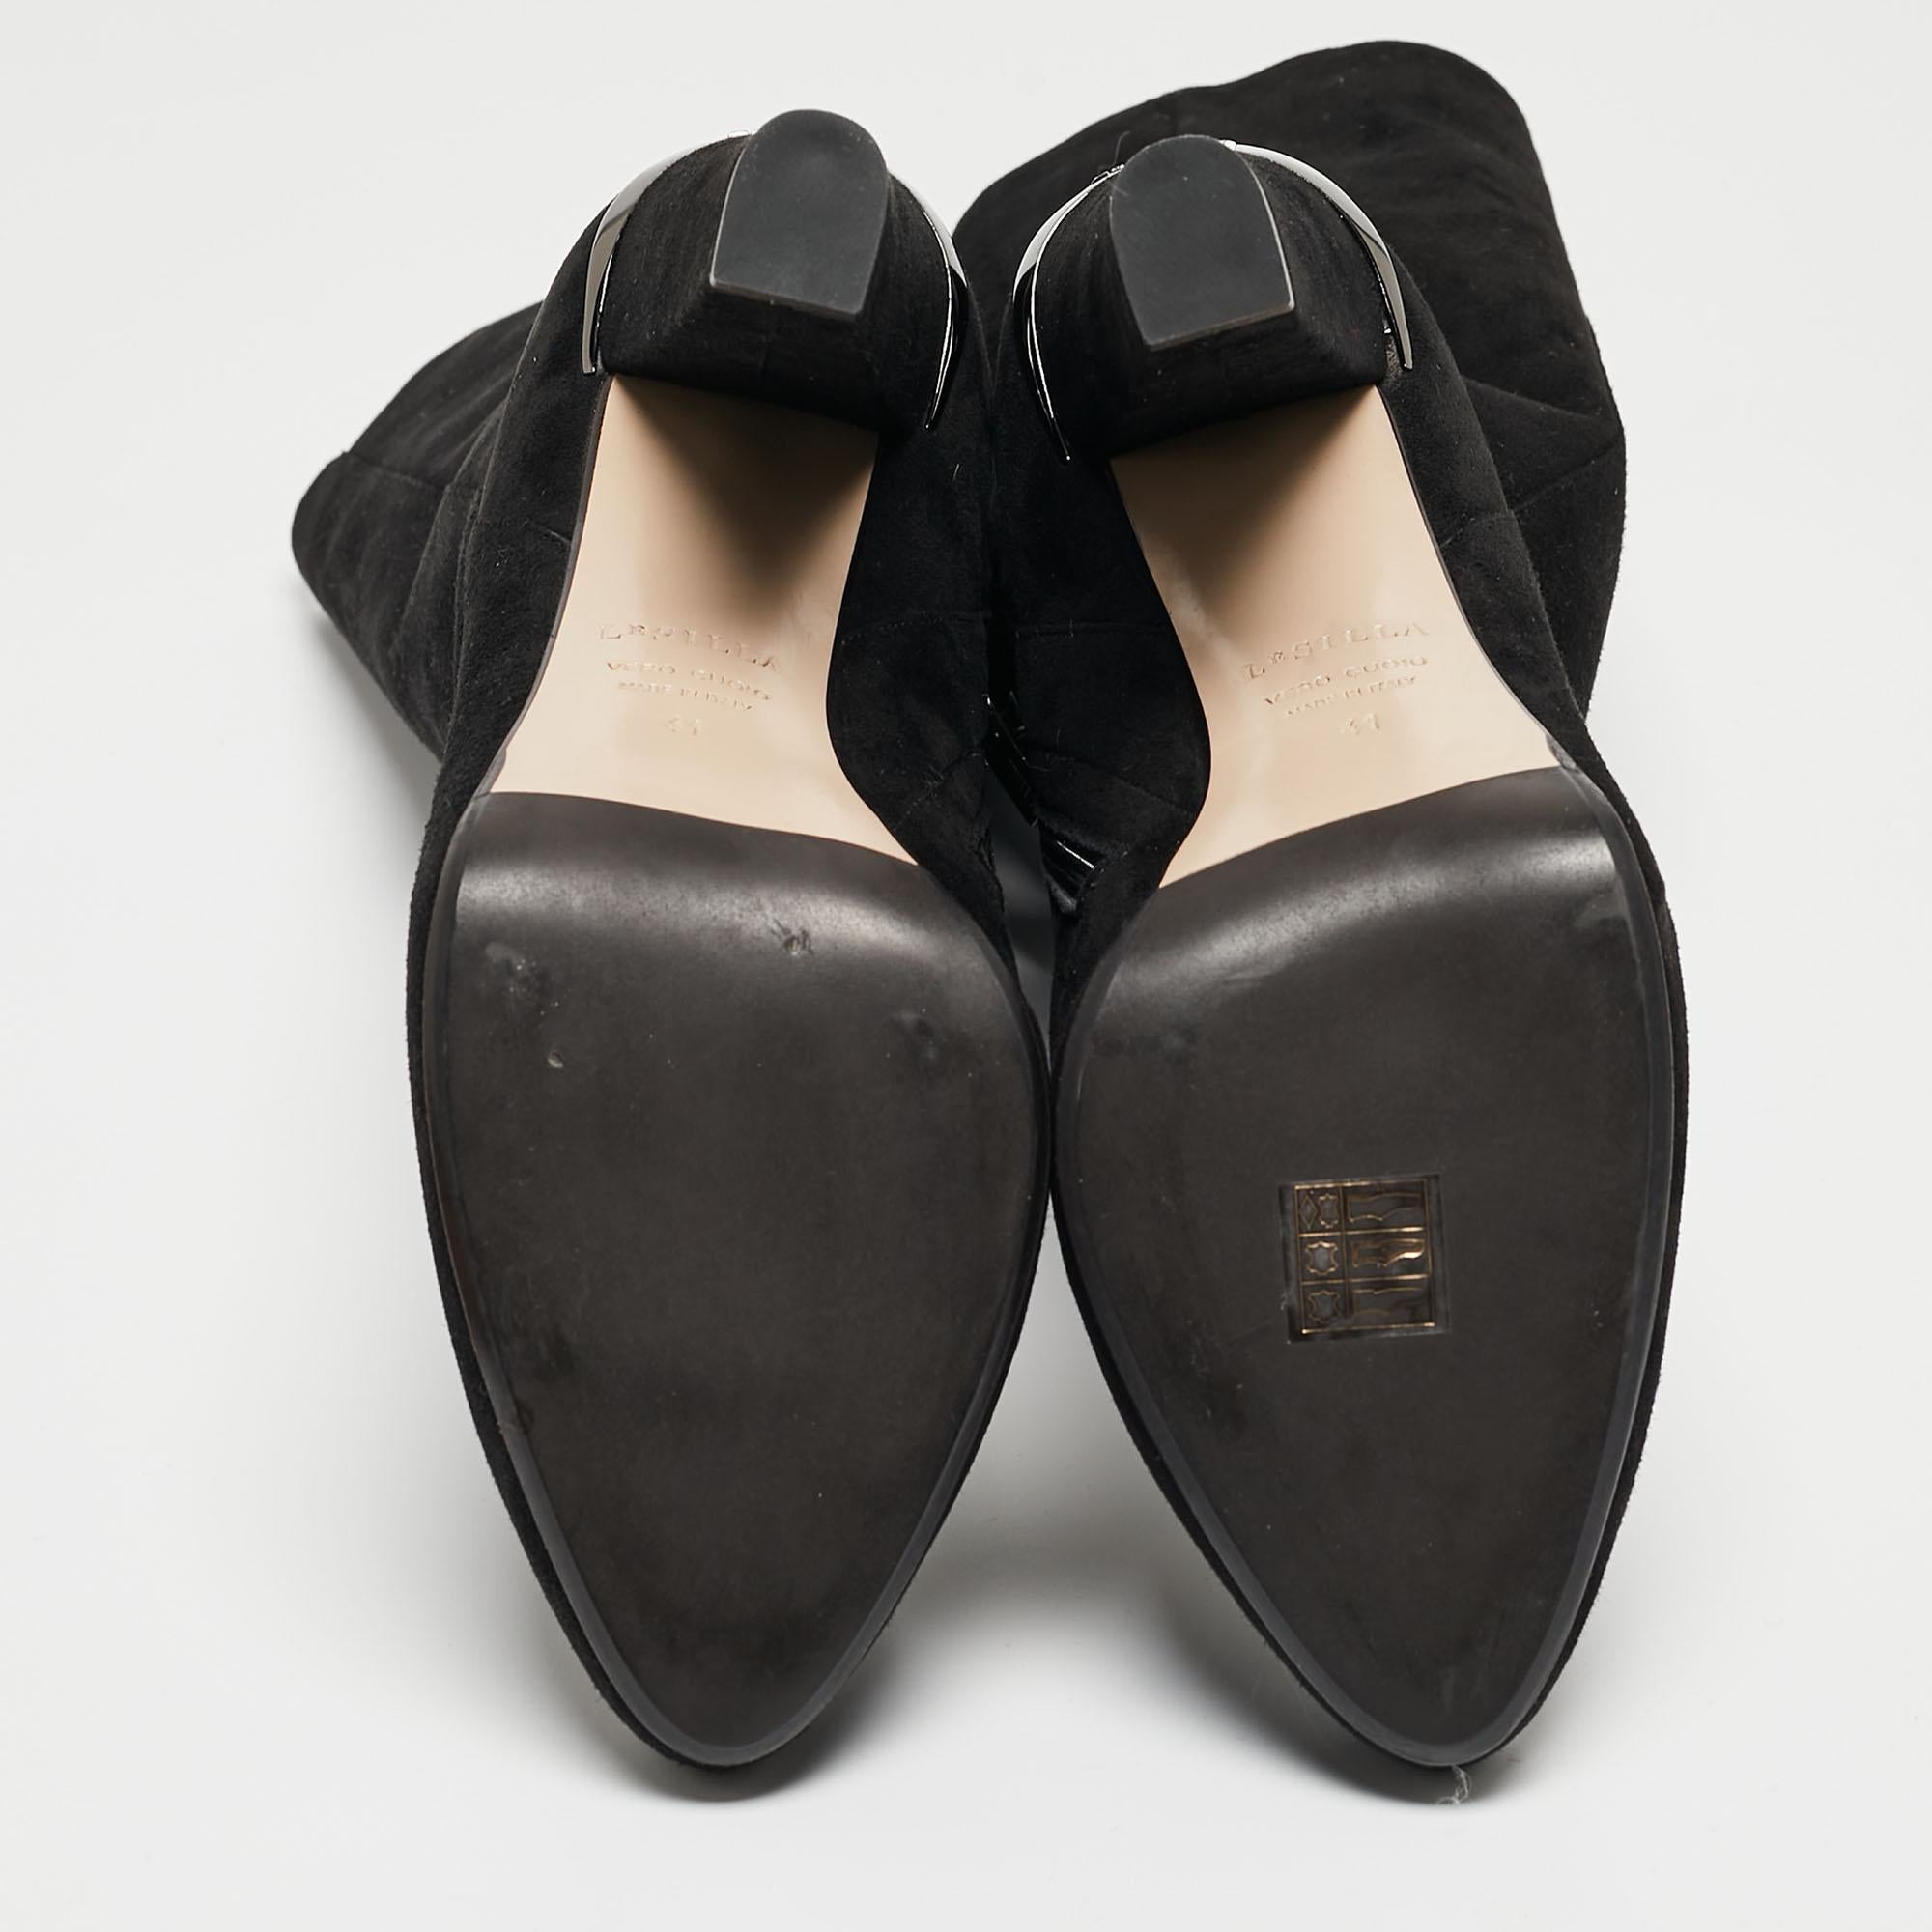 Women's Le Silla Black Suede Platform Mid Calf Boots Size 41